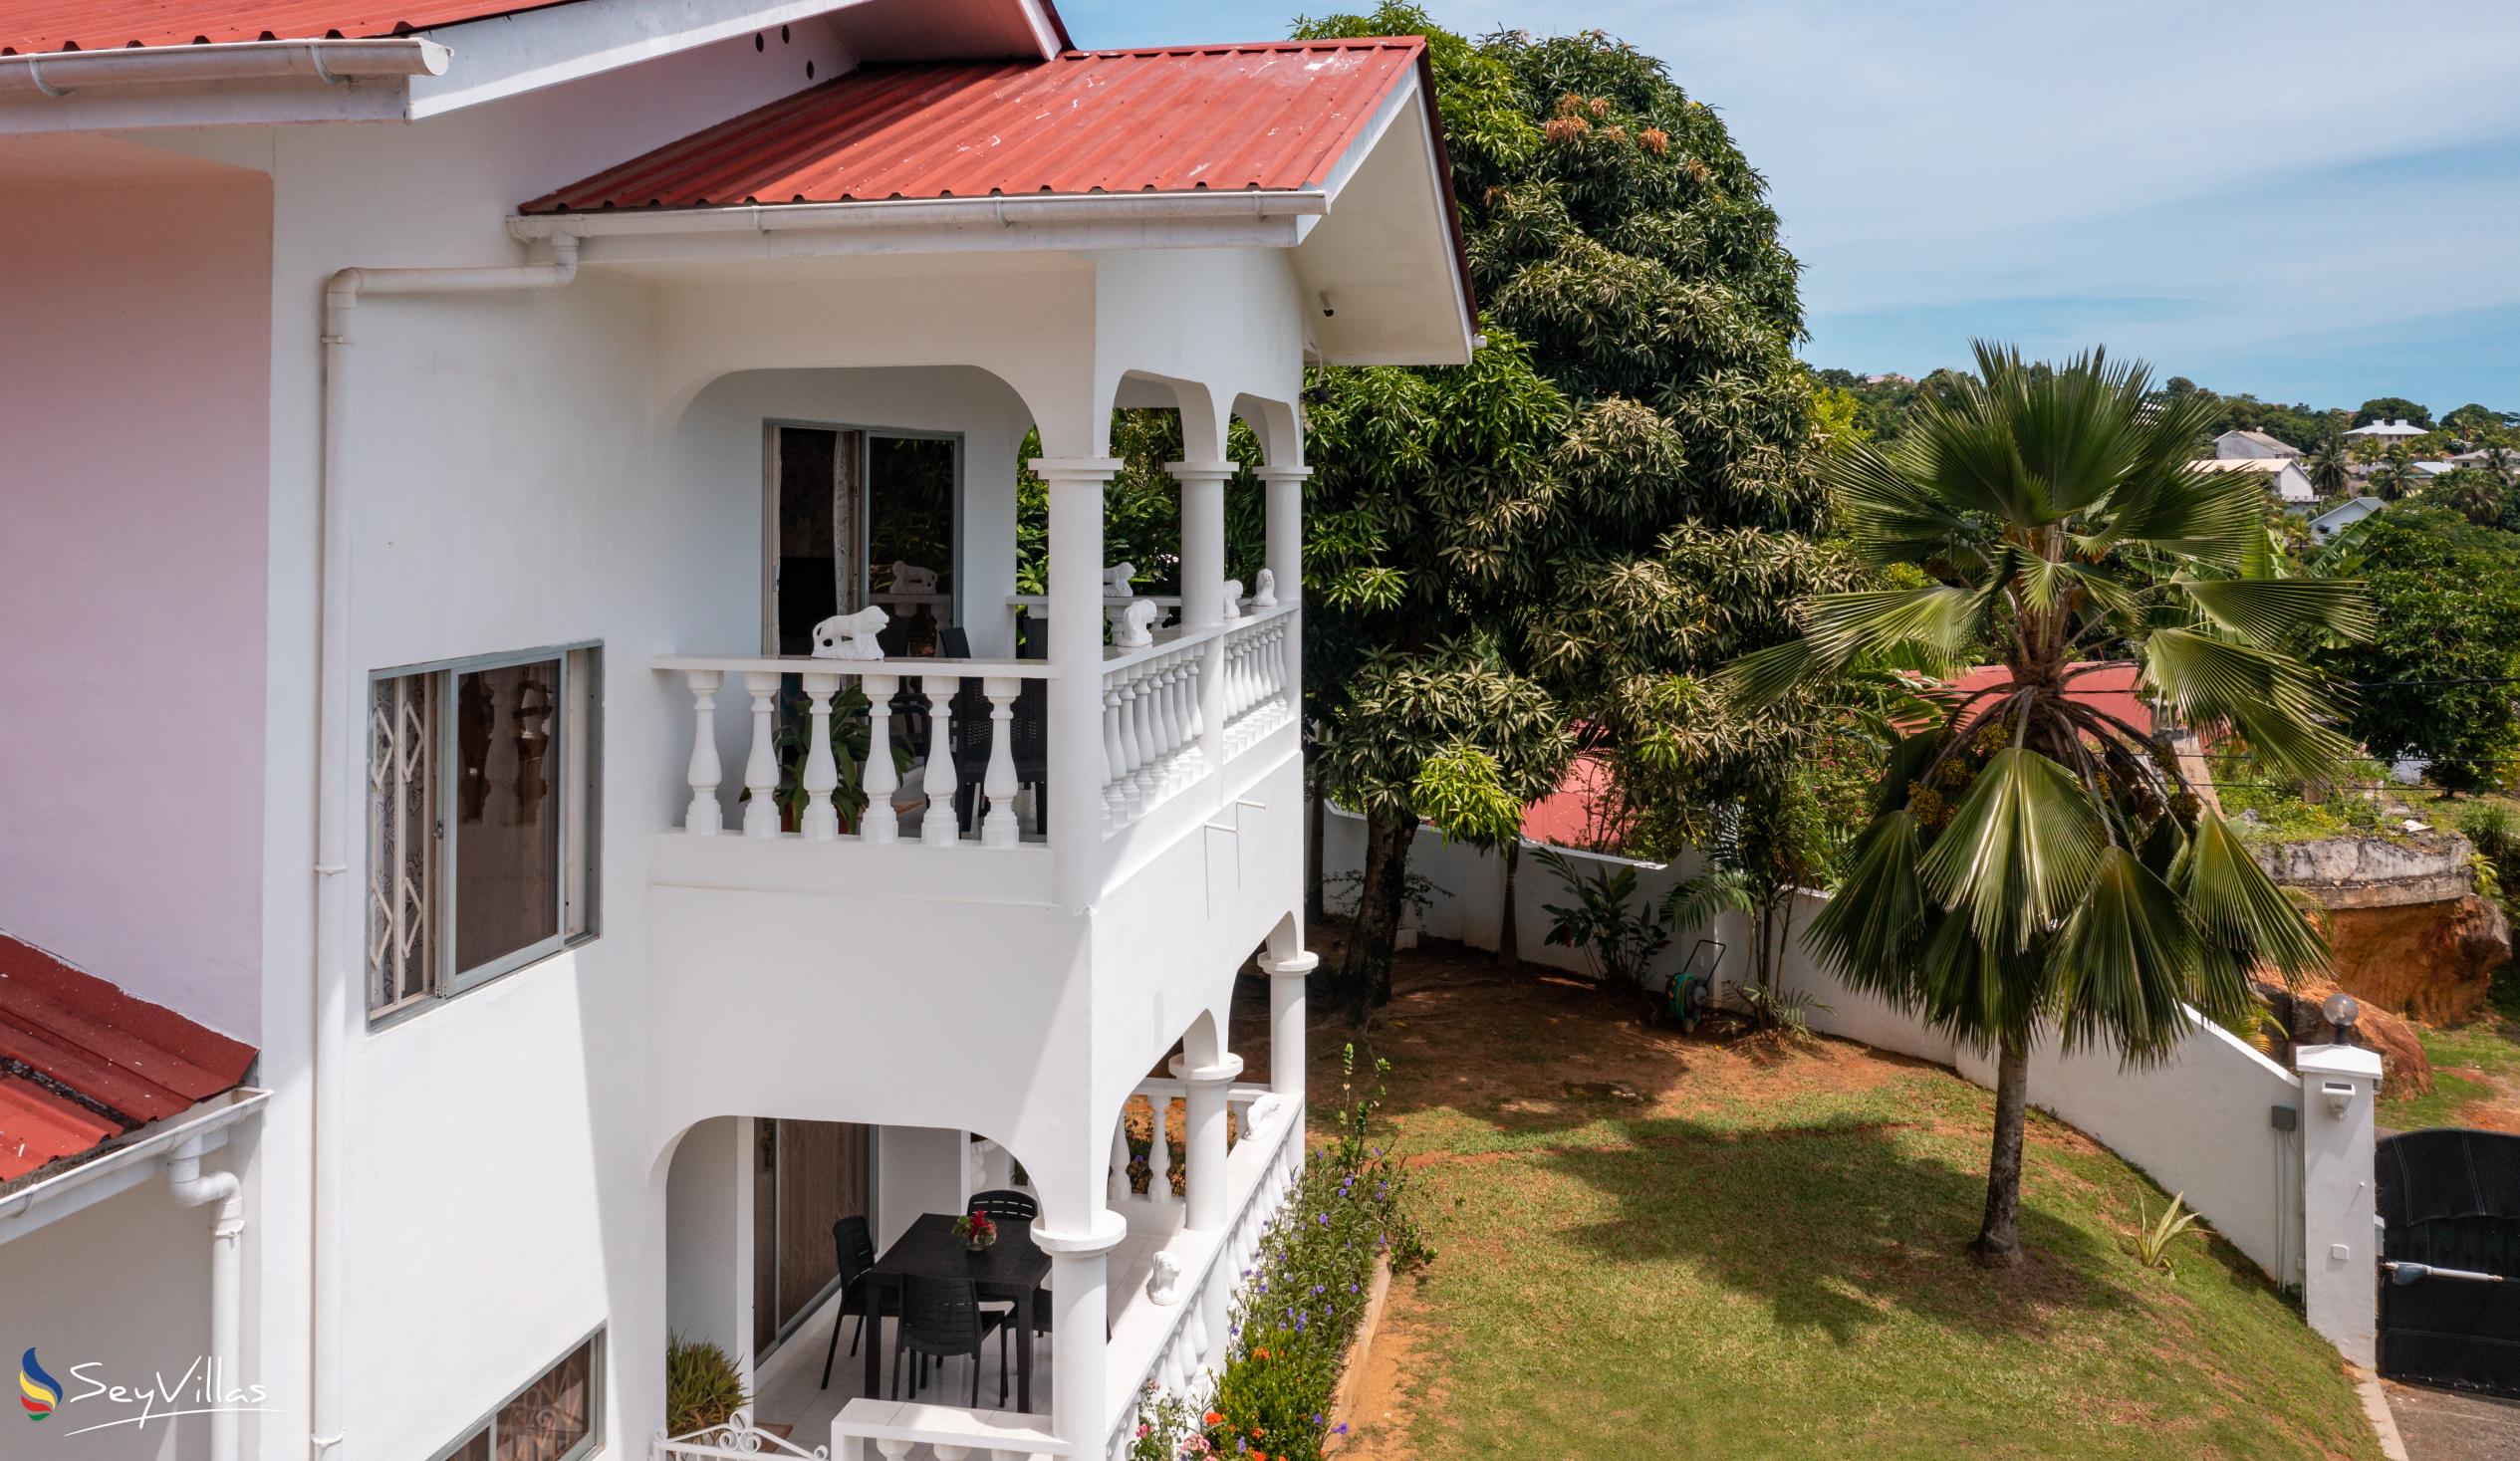 Foto 10: Villa Verde - Aussenbereich - Mahé (Seychellen)